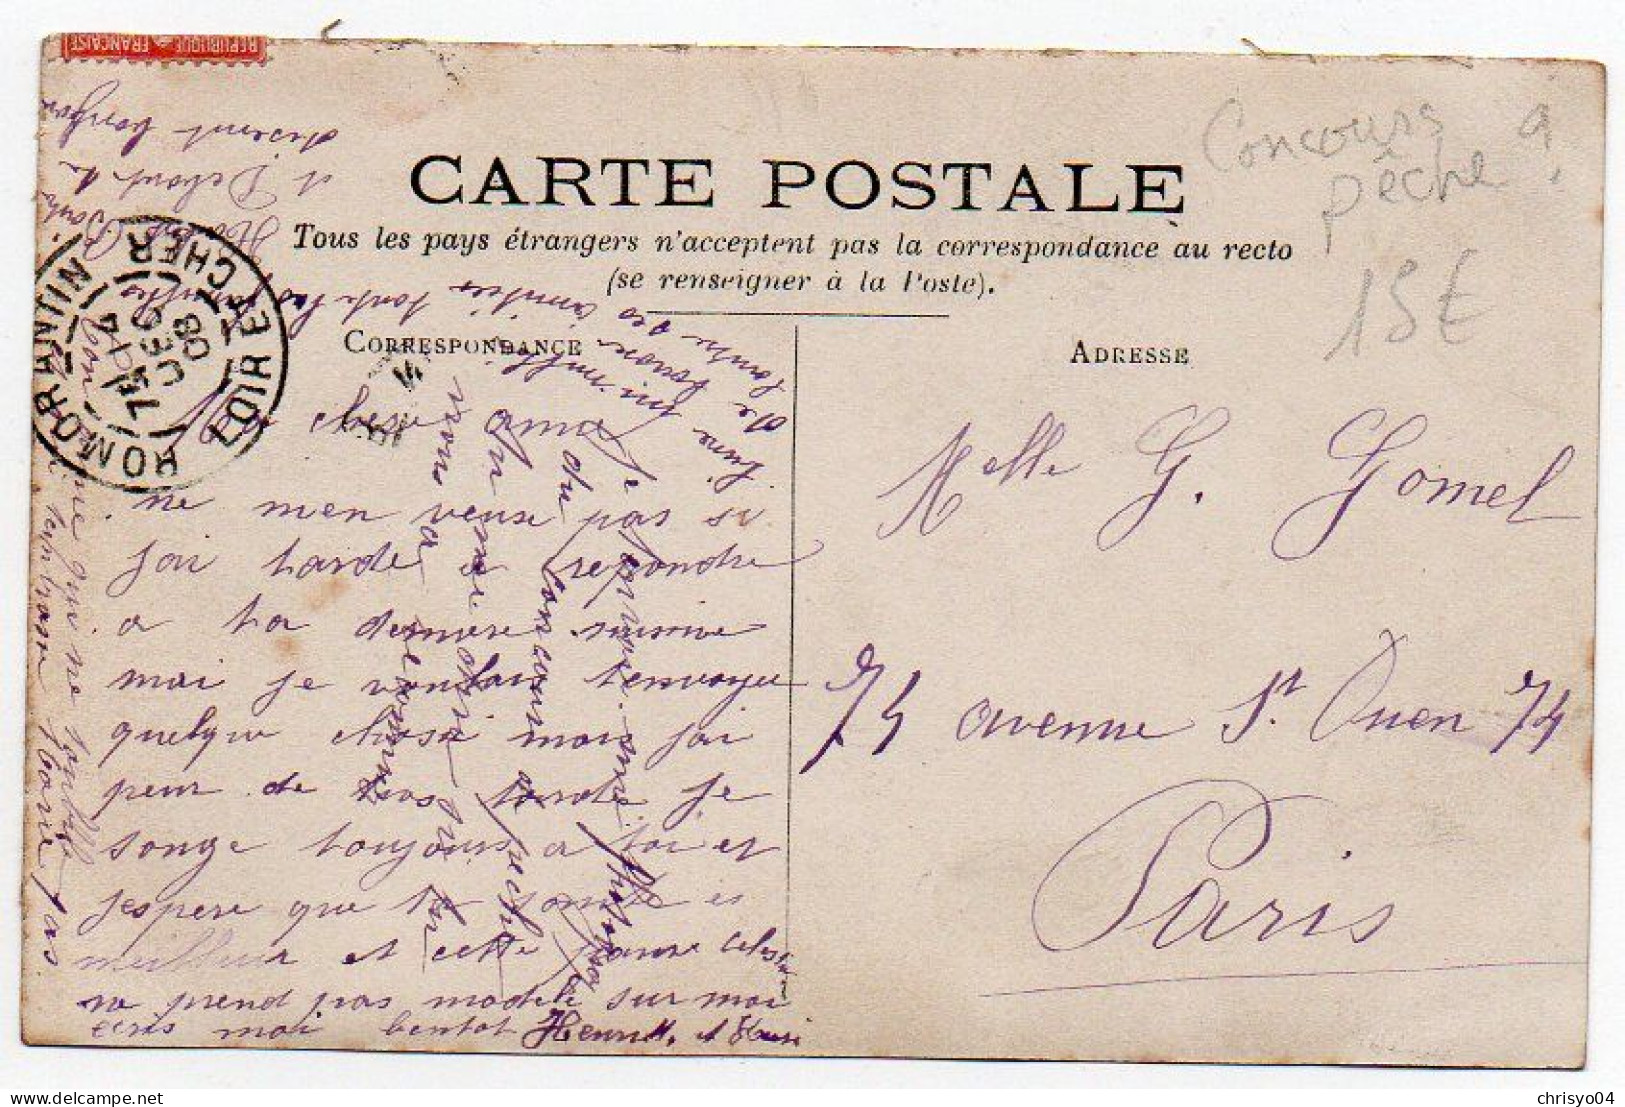 4V4Sb   Carte Photo Concours De Pêche à La Ligne Envoyée De Romorantin En 1908 - Pesca